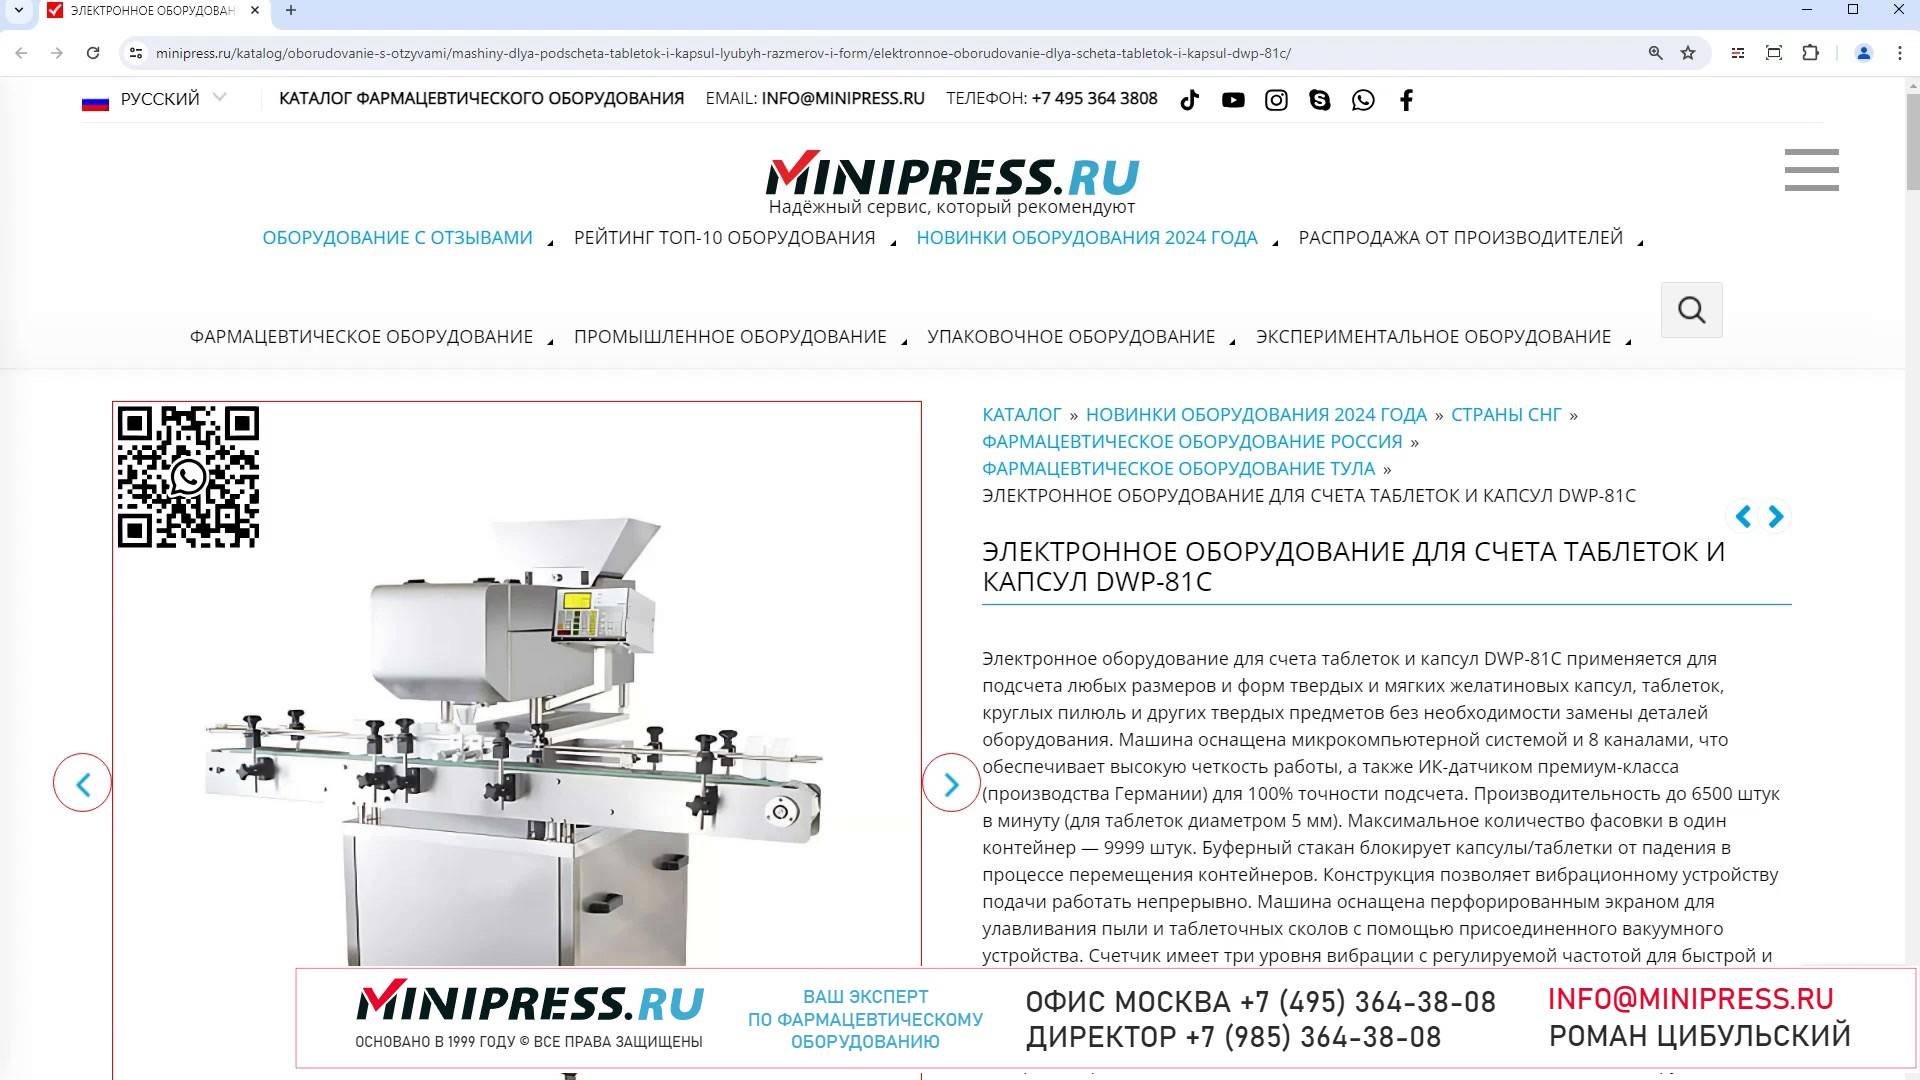 Minipress.ru Электронное оборудование для счета таблеток и капсул DWP-81C